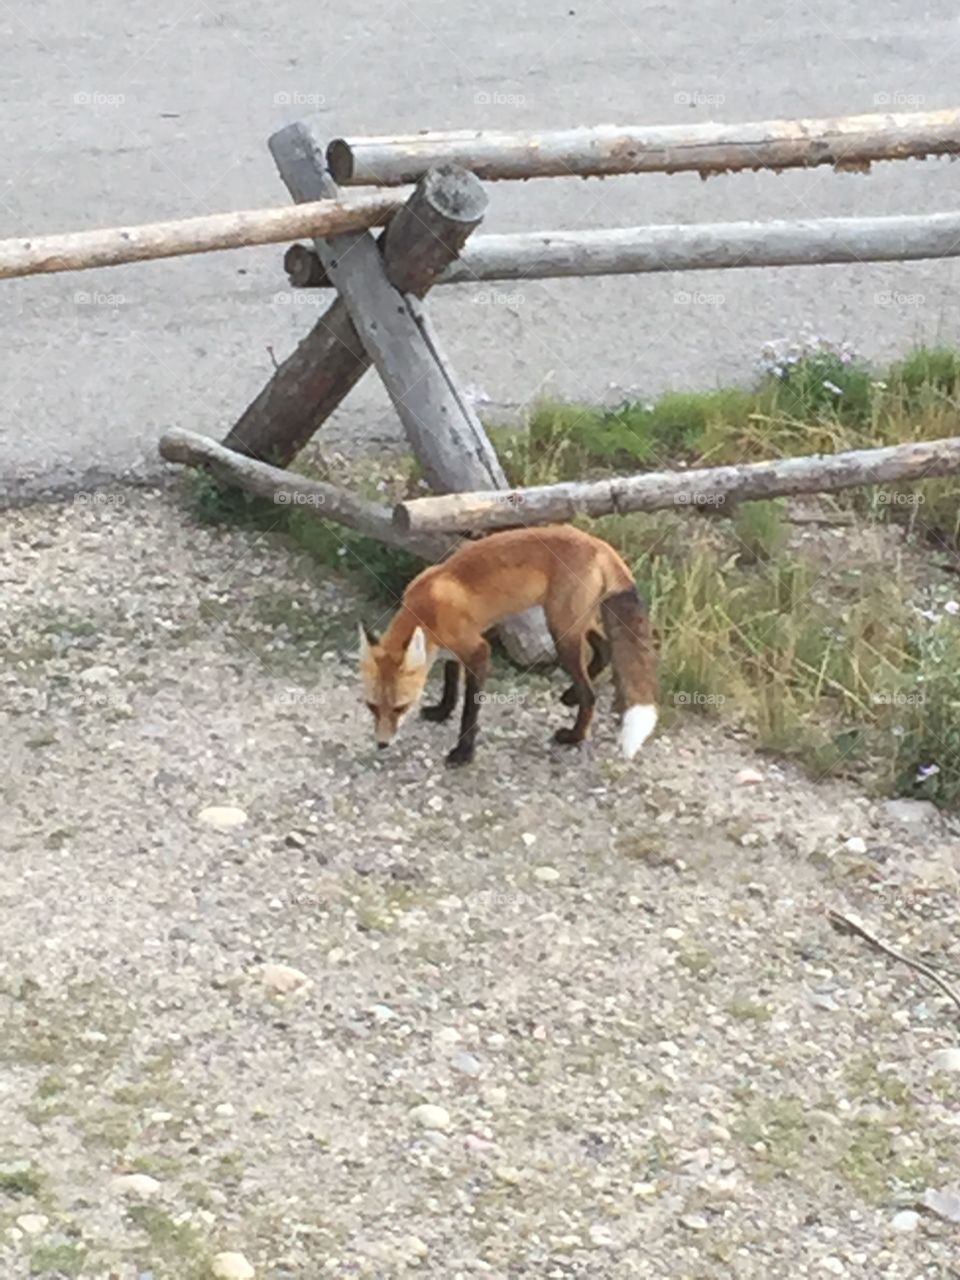 A Teton Fox